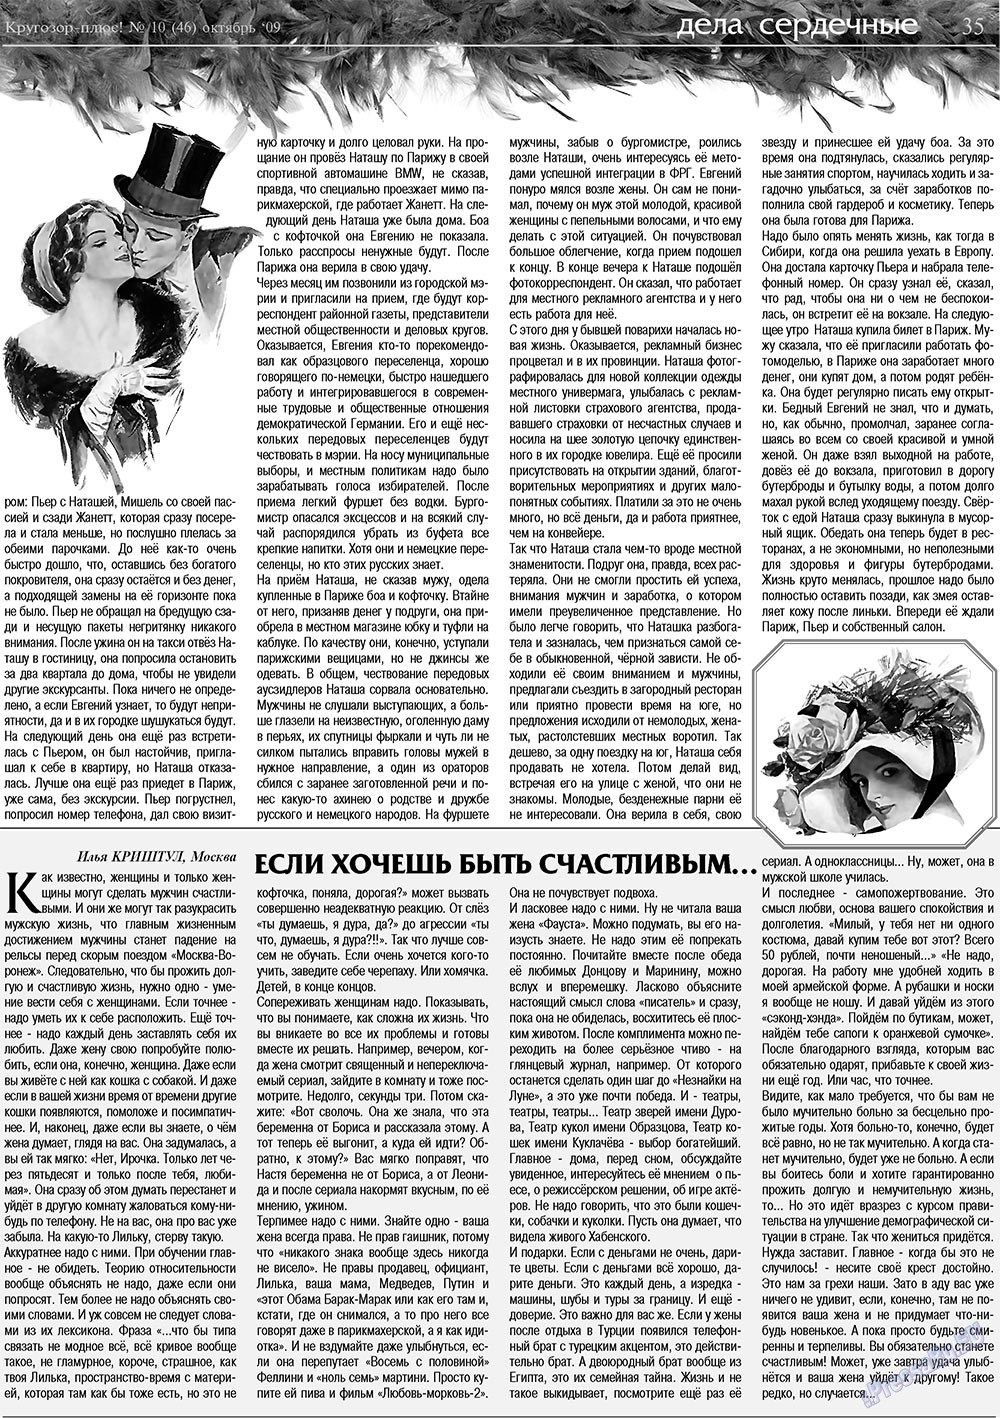 Кругозор плюс!, газета. 2009 №10 стр.35